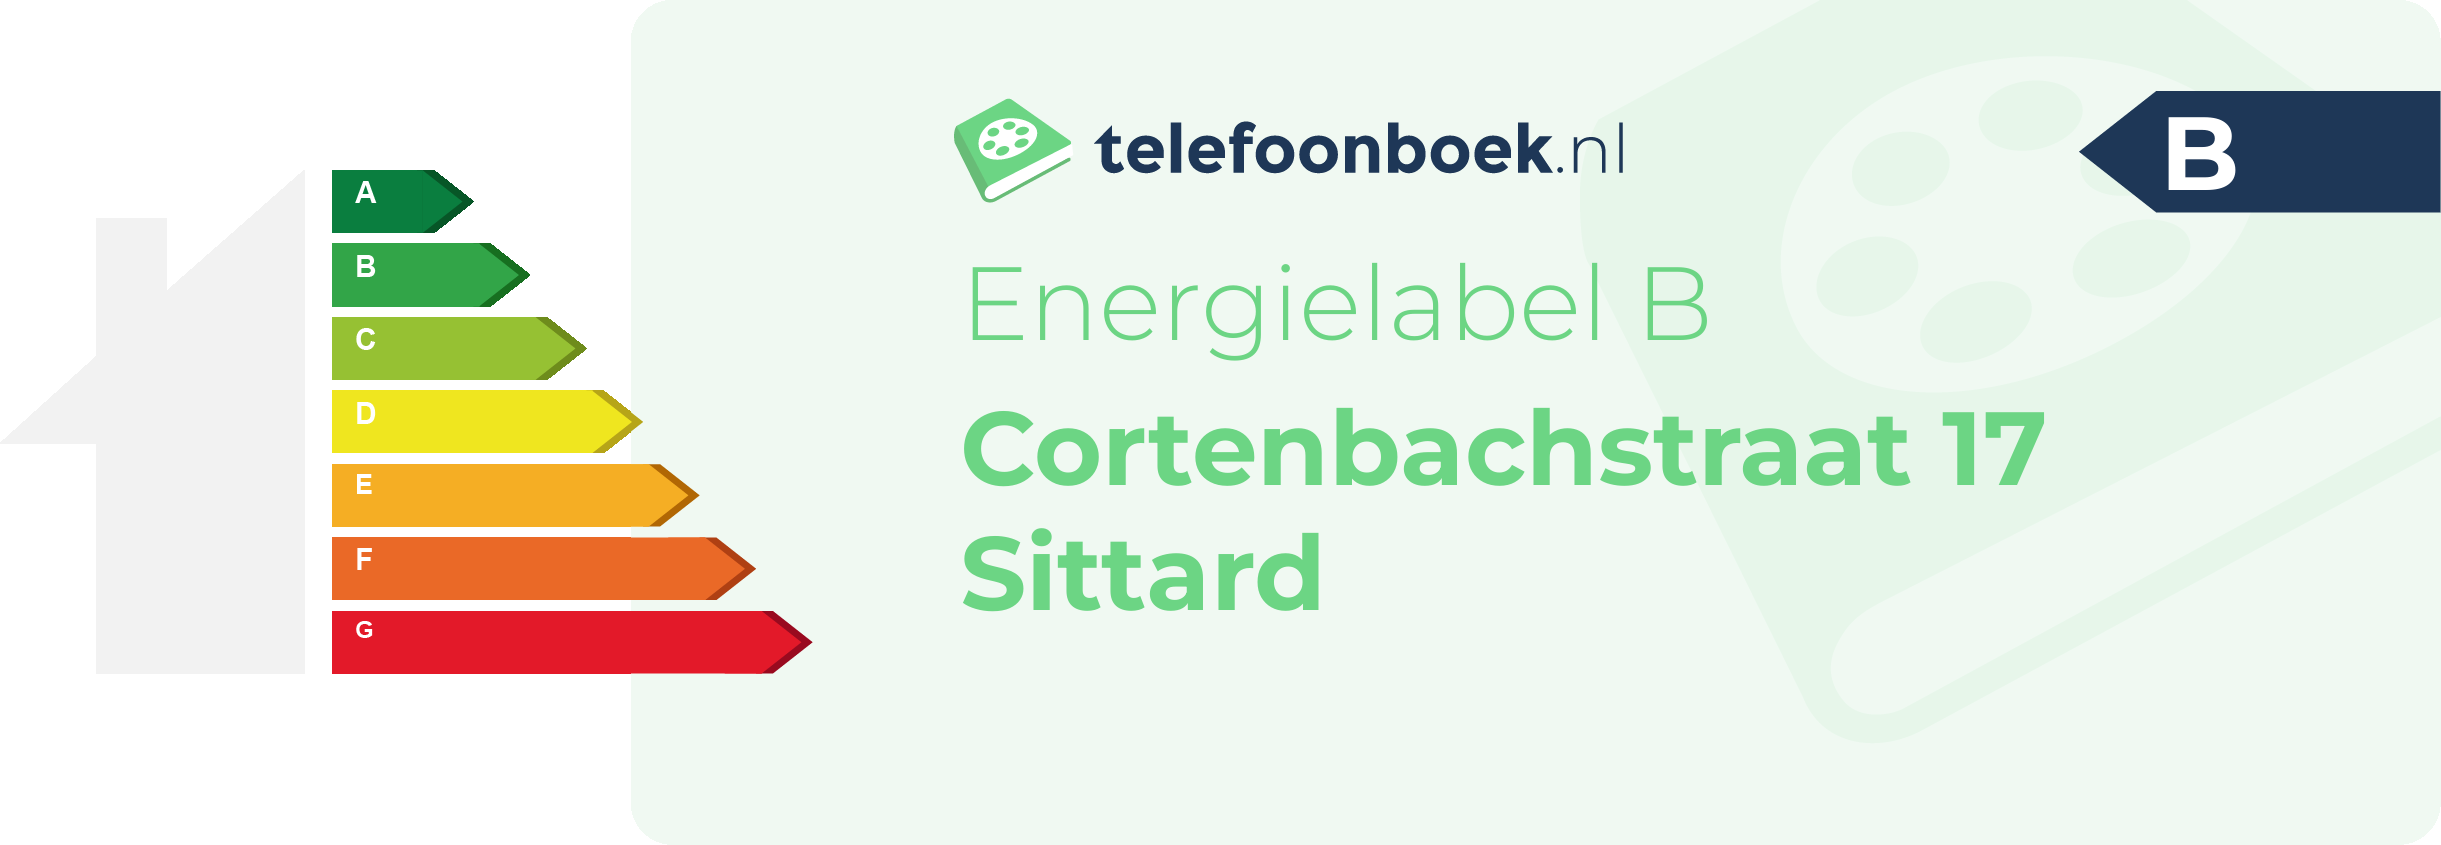 Energielabel Cortenbachstraat 17 Sittard